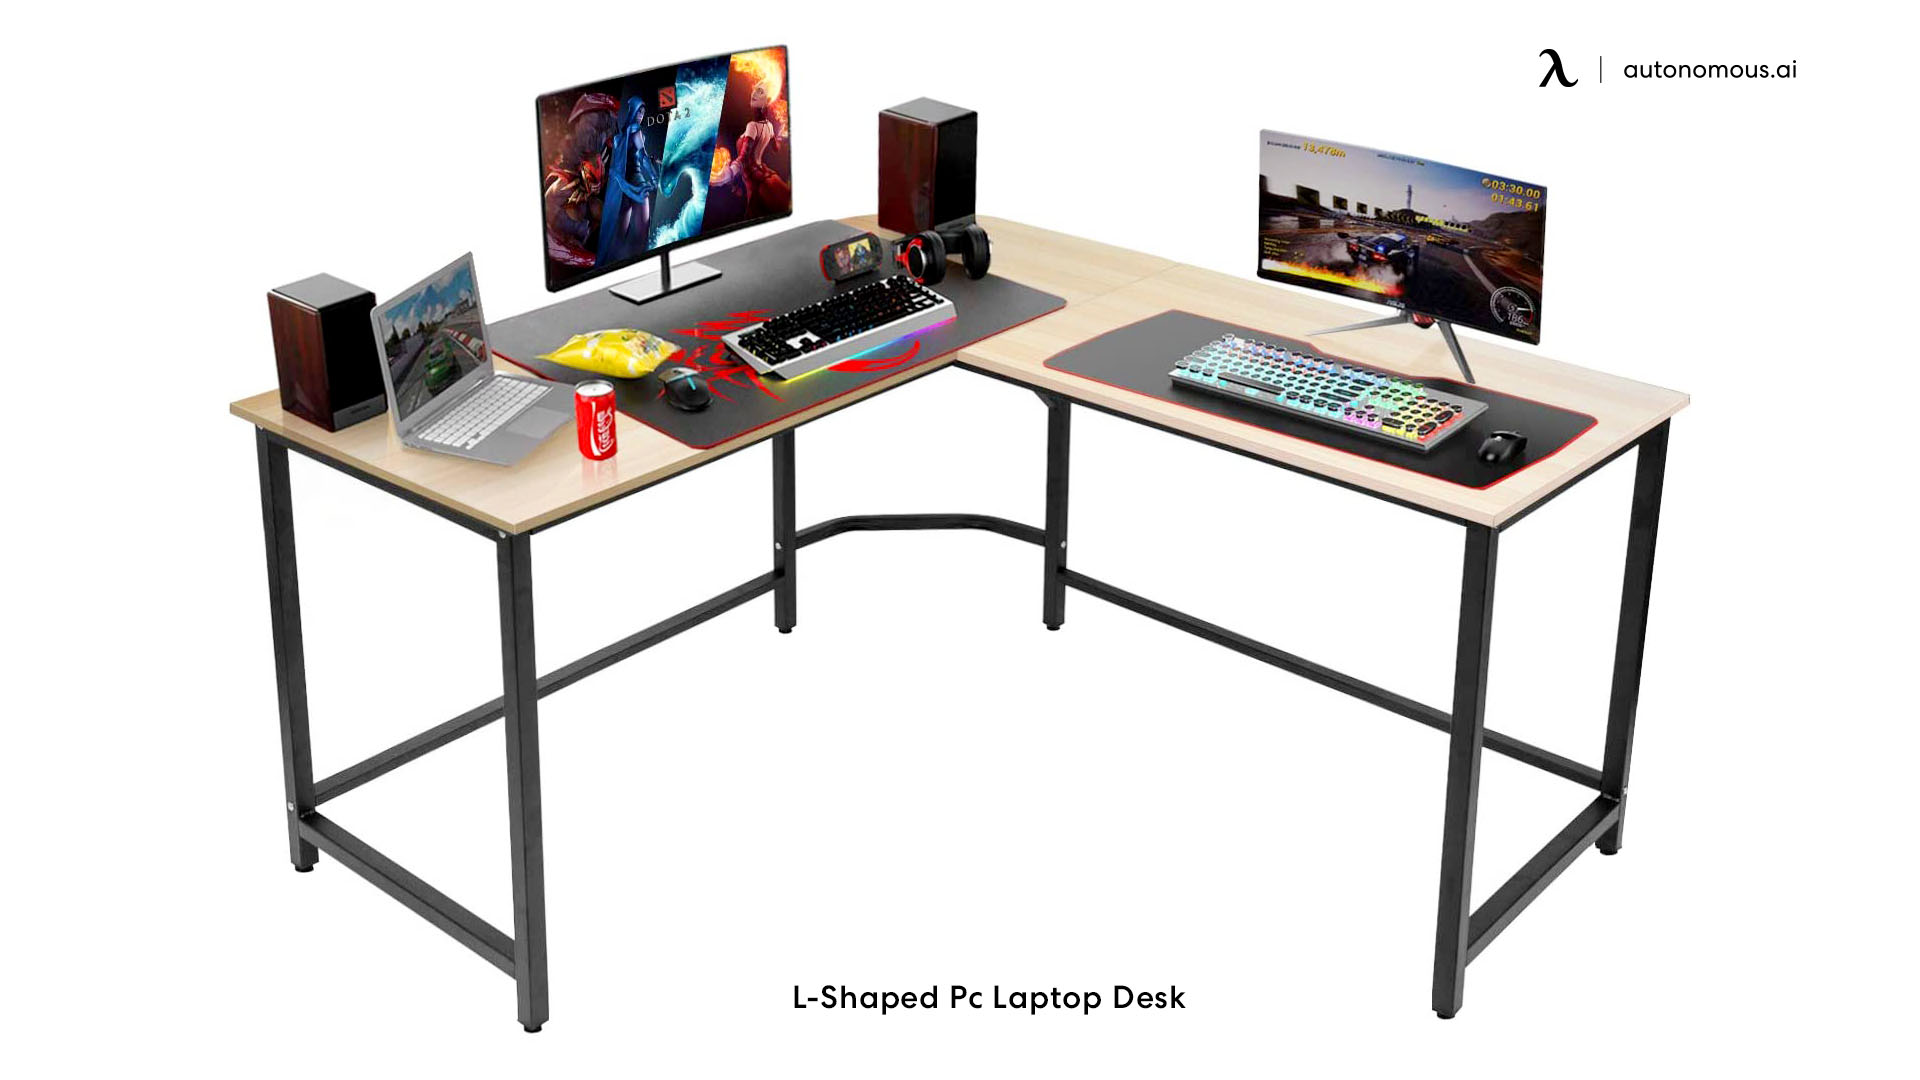 L-Shaped Pc Laptop Desk